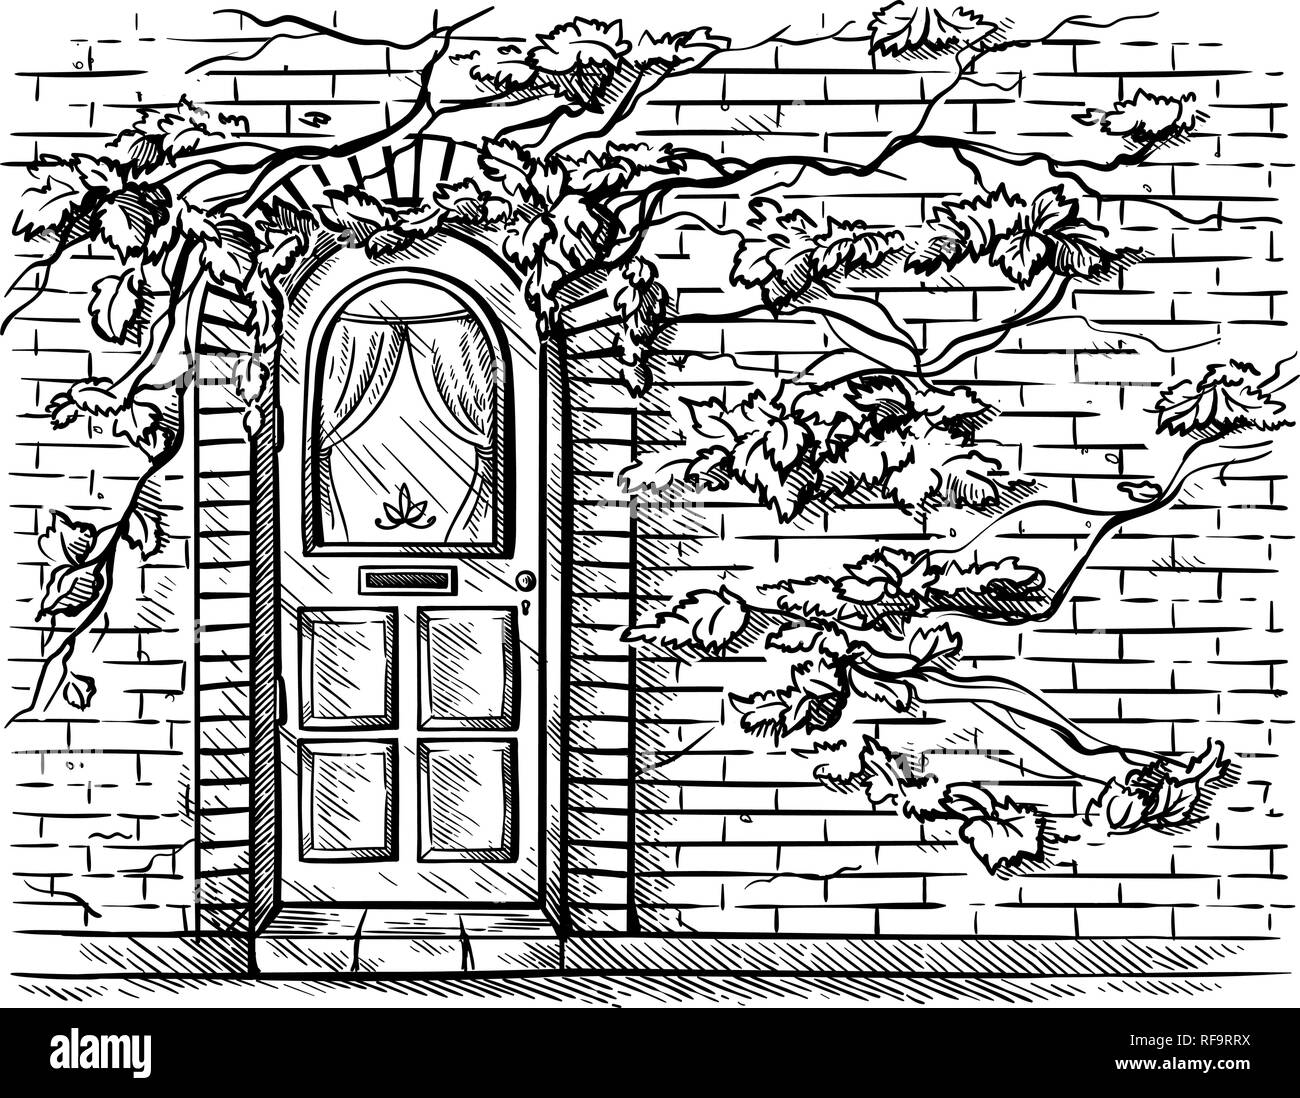 Croquis dibujado a mano antigua puerta de madera doble arco de ladrillo muro trenzado uva ilustración vectorial Ilustración del Vector